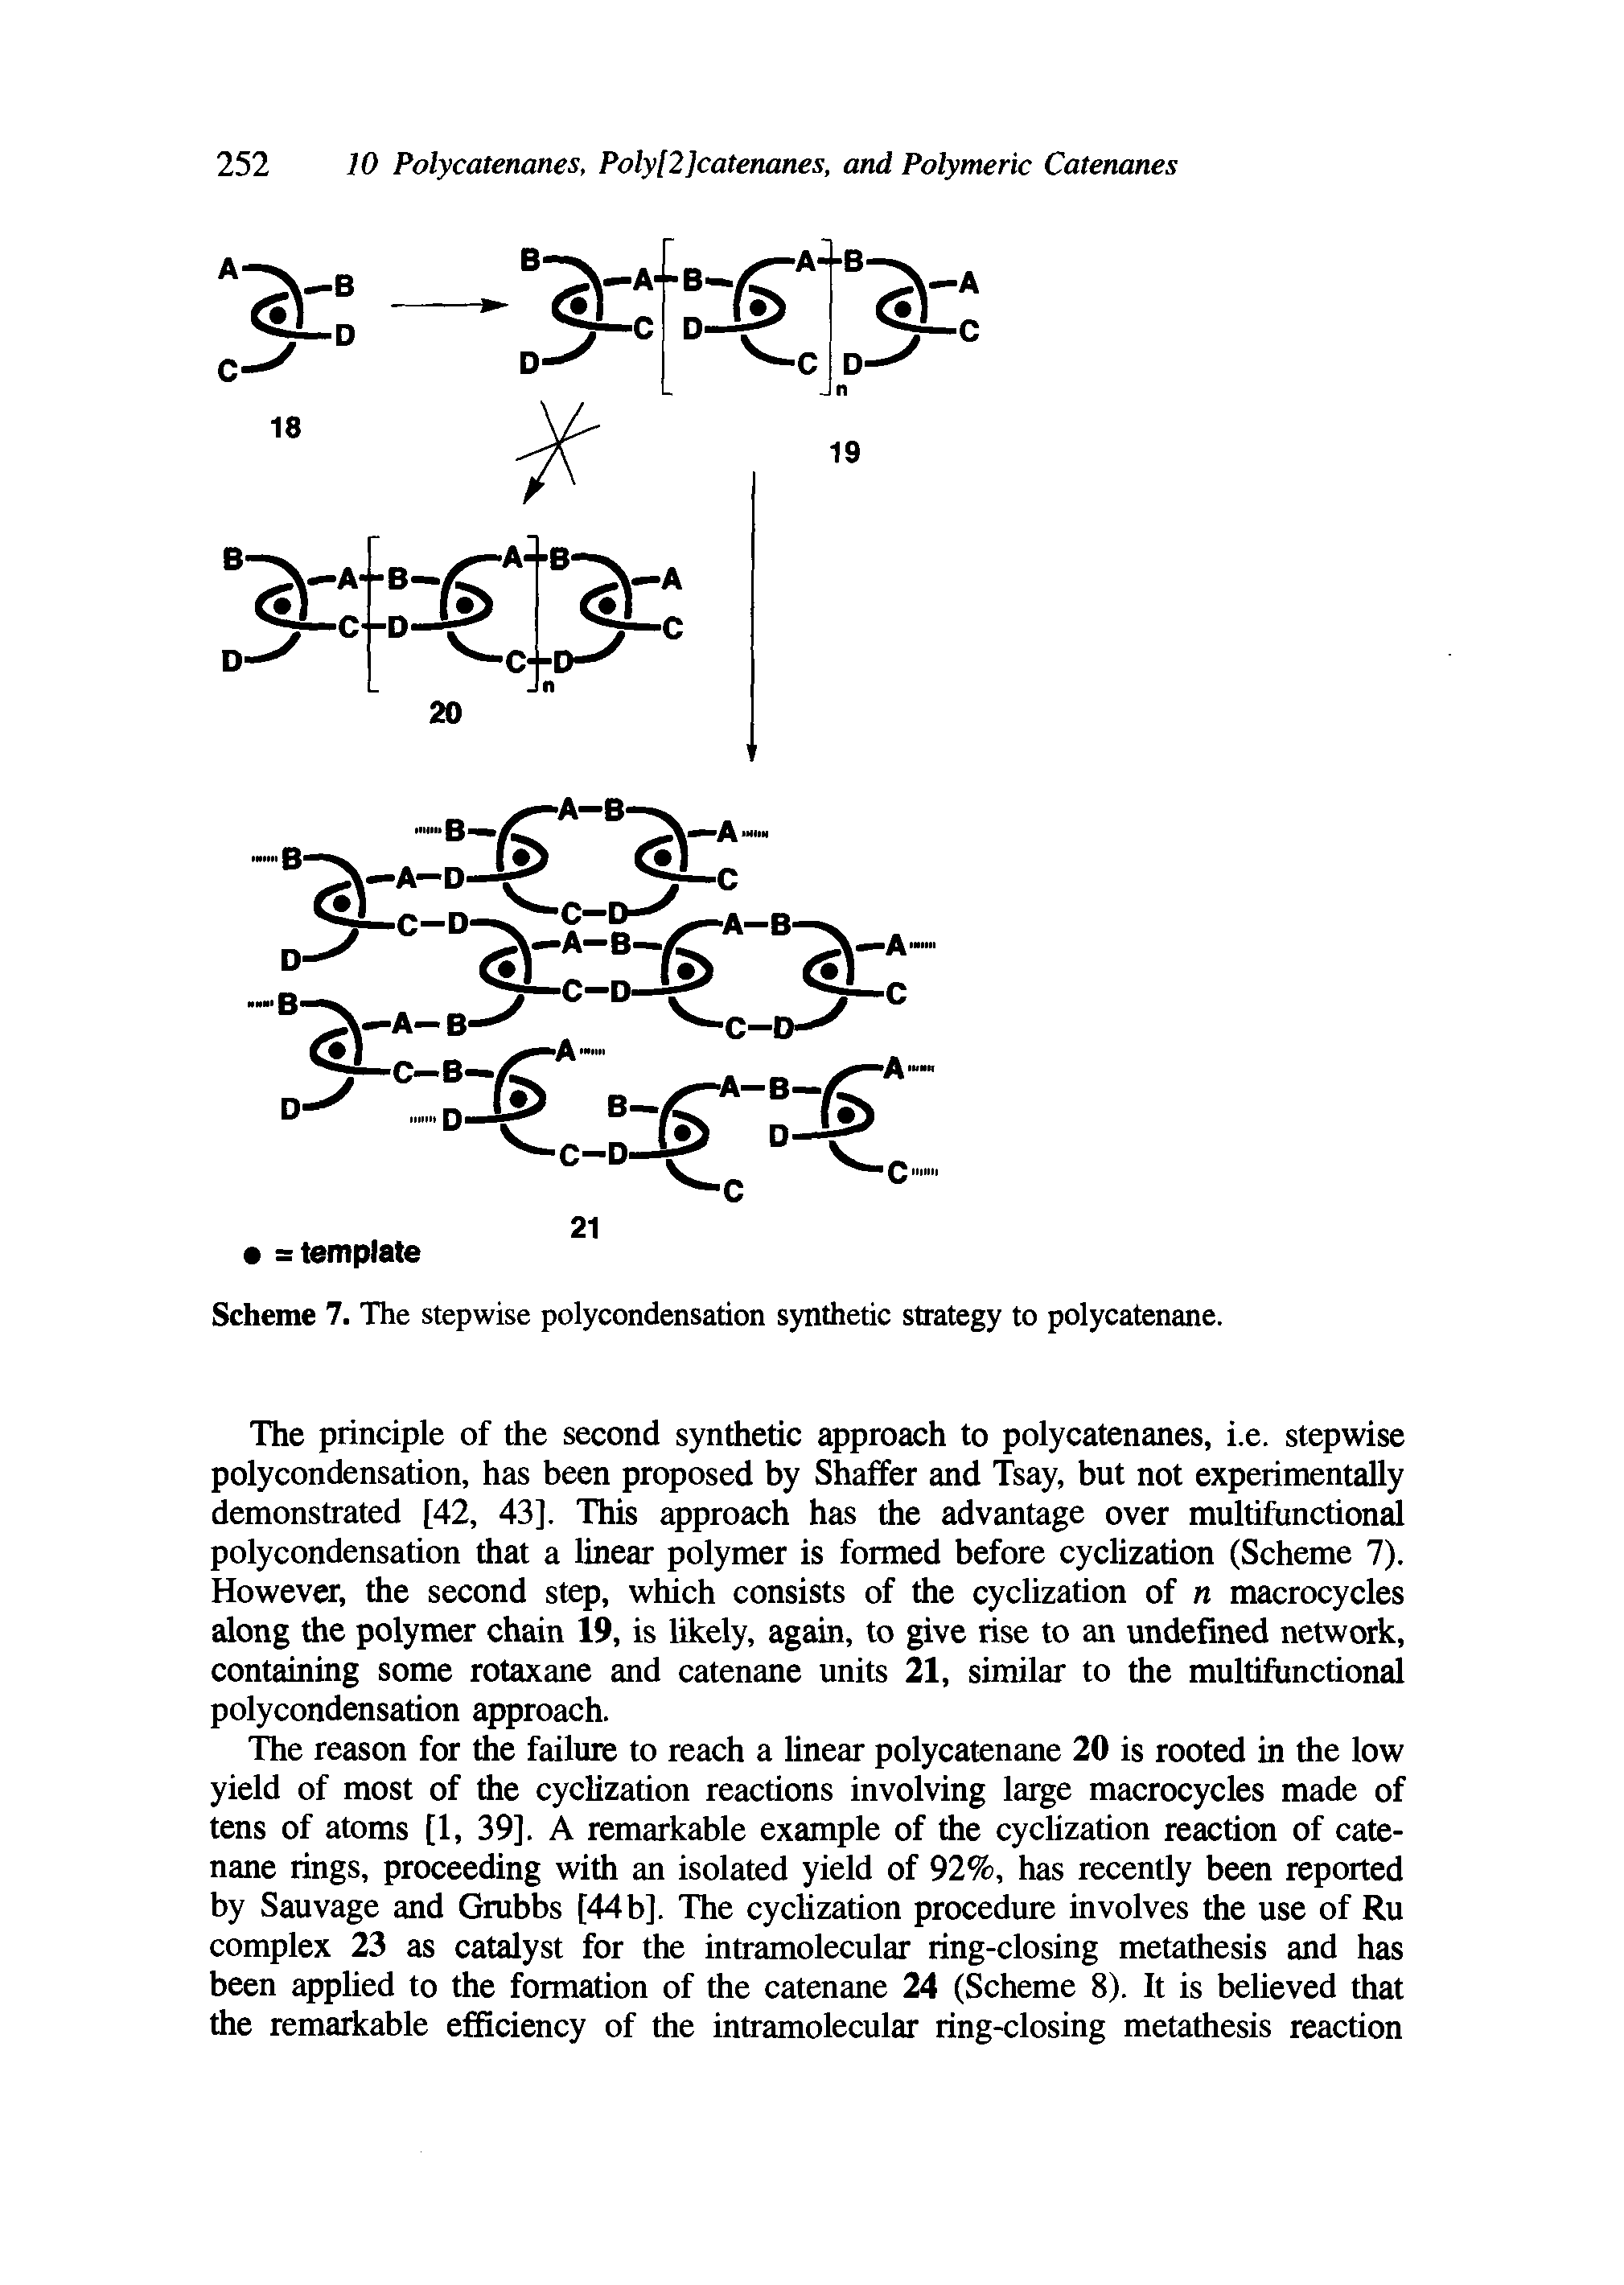 Scheme 7. The stepwise polycondensation synthetic strategy to polycatenane.